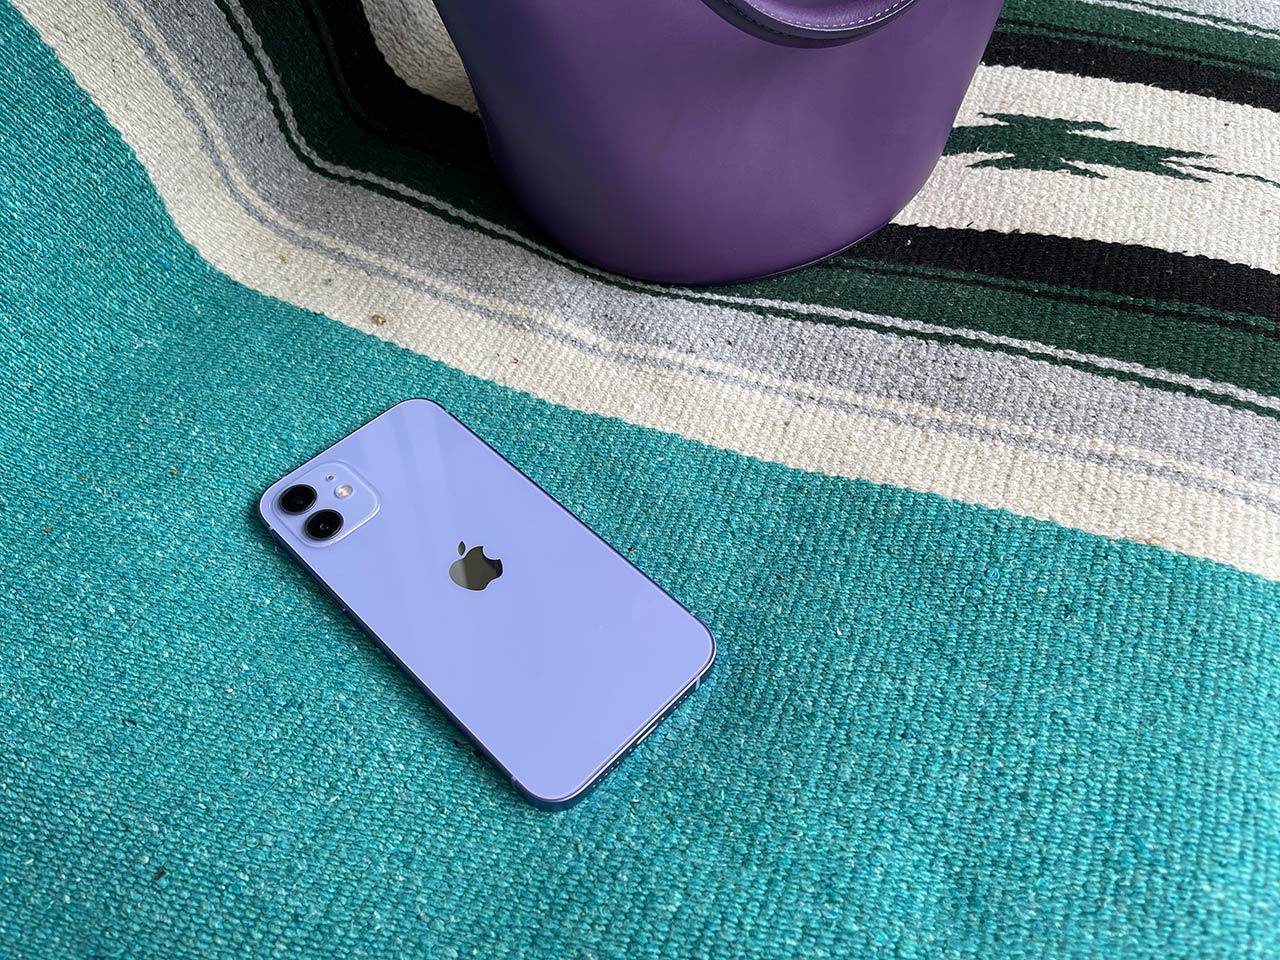 爽やかな紫に心奪われる Iphone 12の新色パープル 実機動画 Engadget 日本版